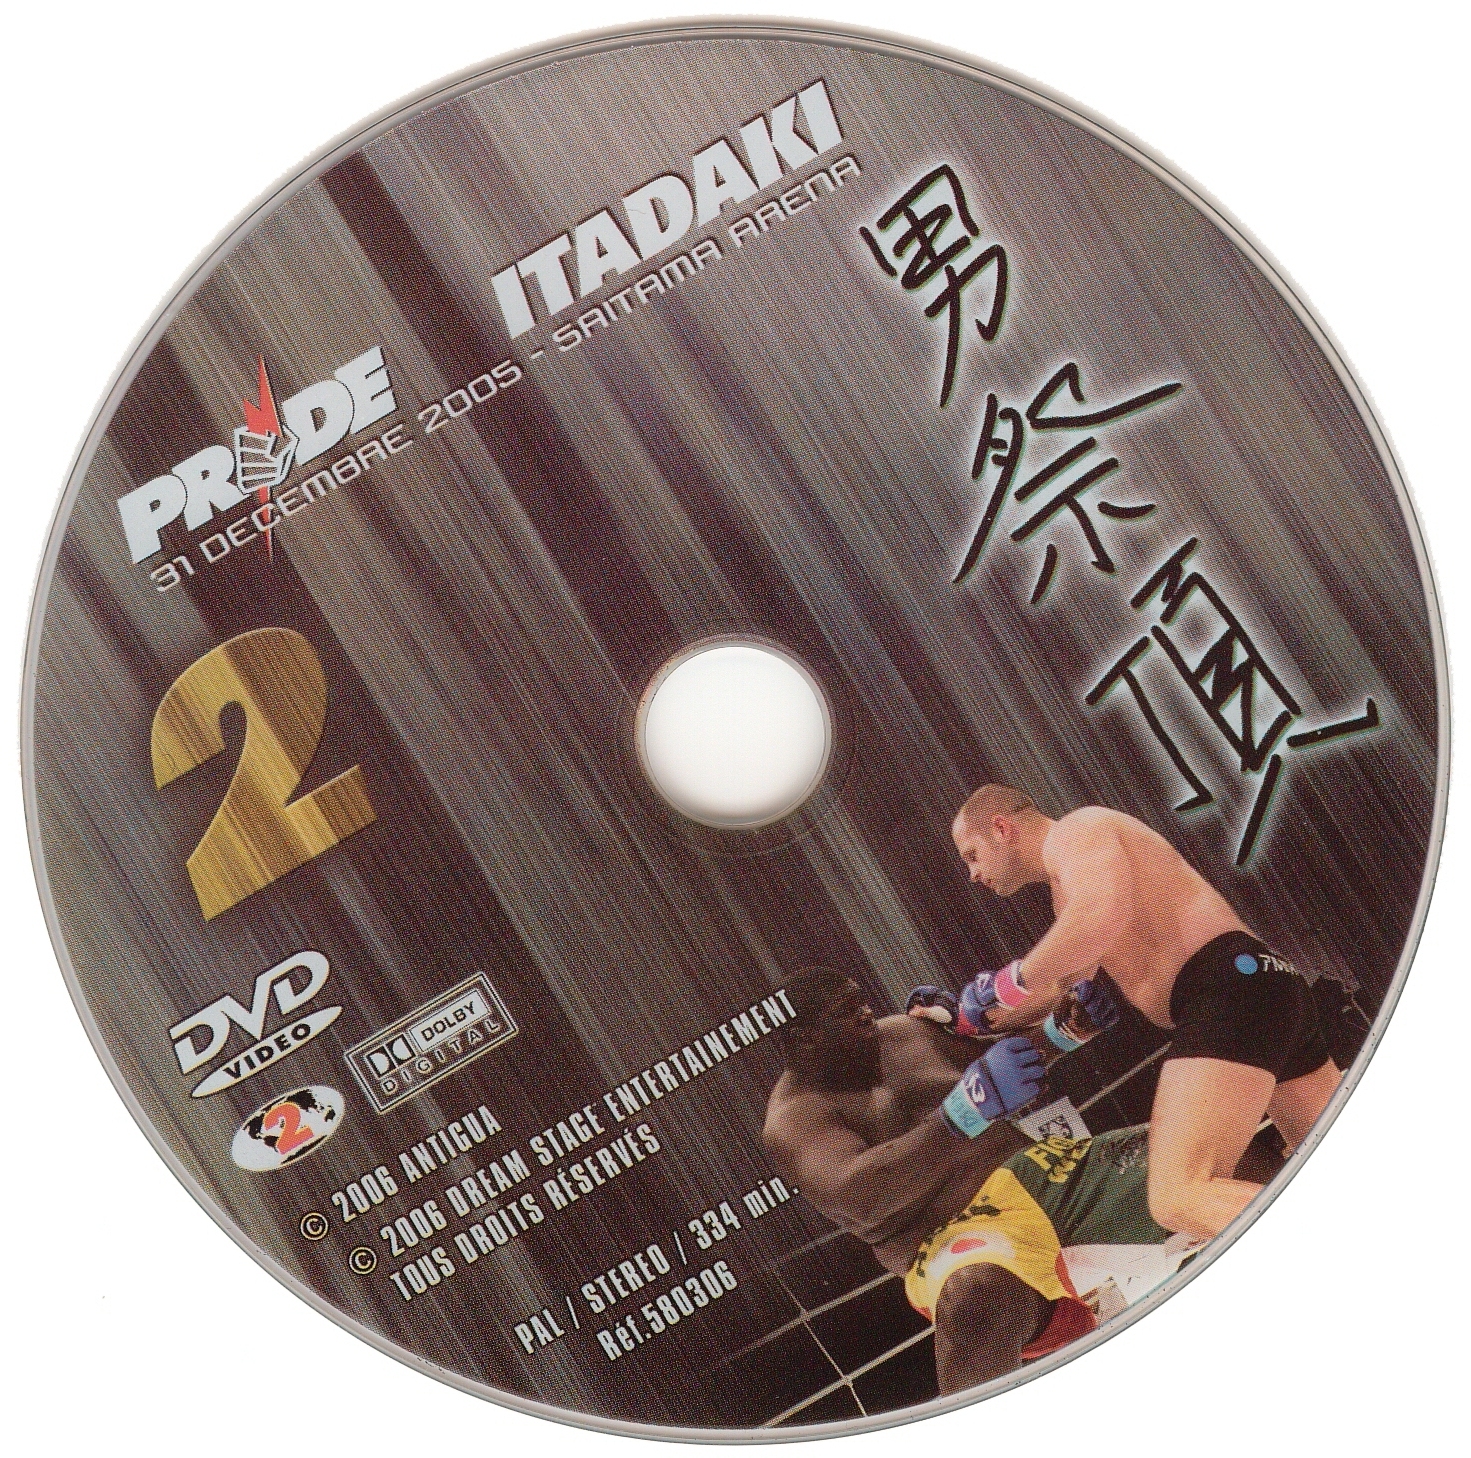 Pride itadaki (2005)